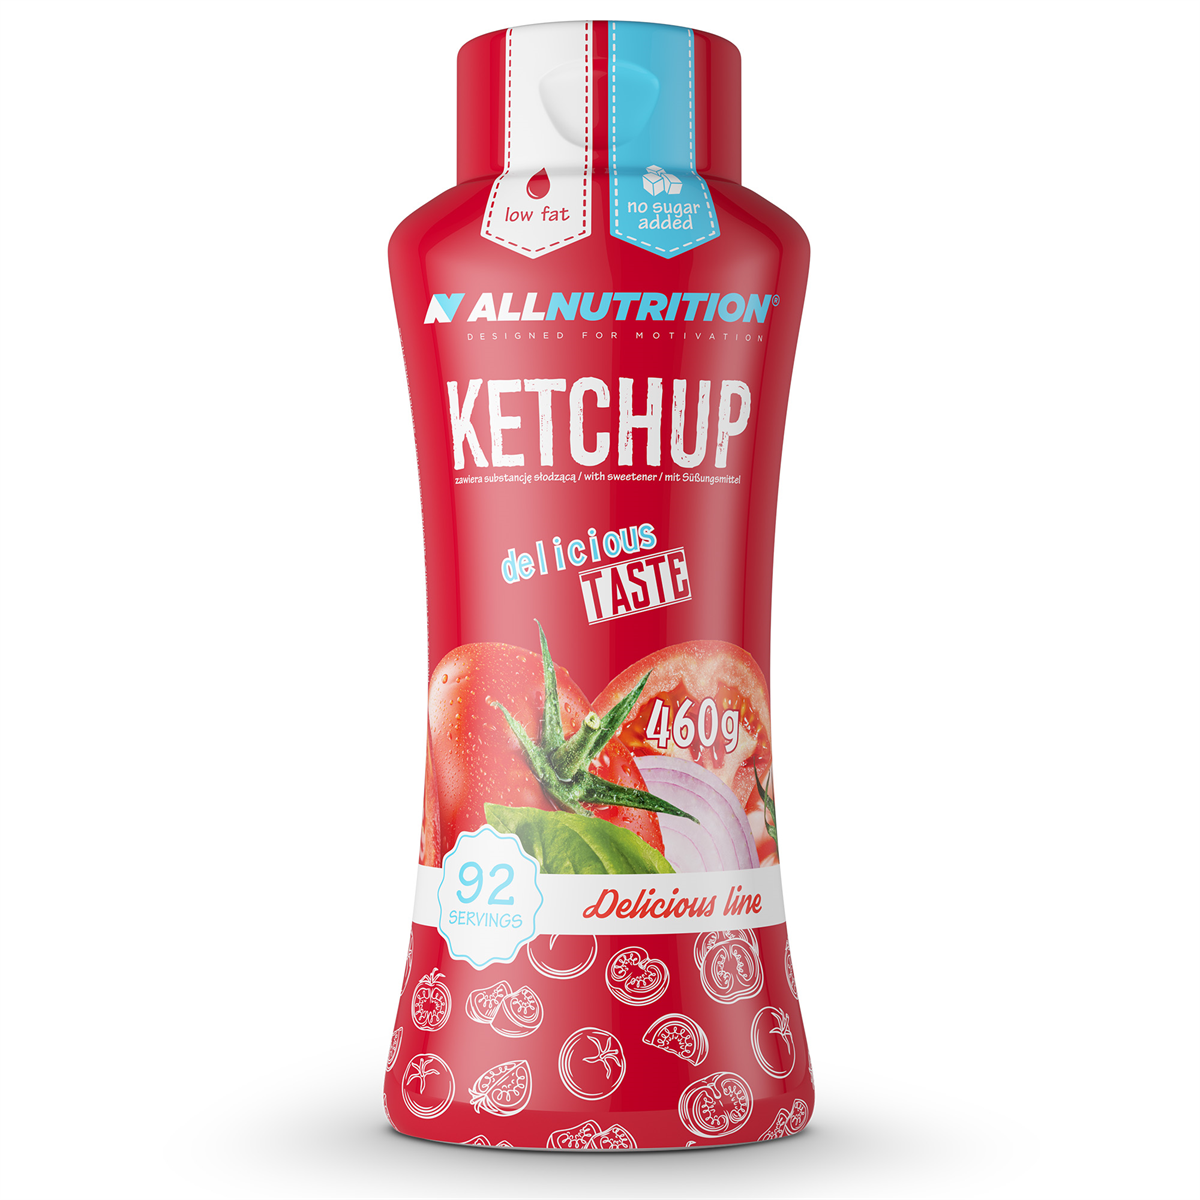 ALLNUTRITION Sauce Ketchup 460g